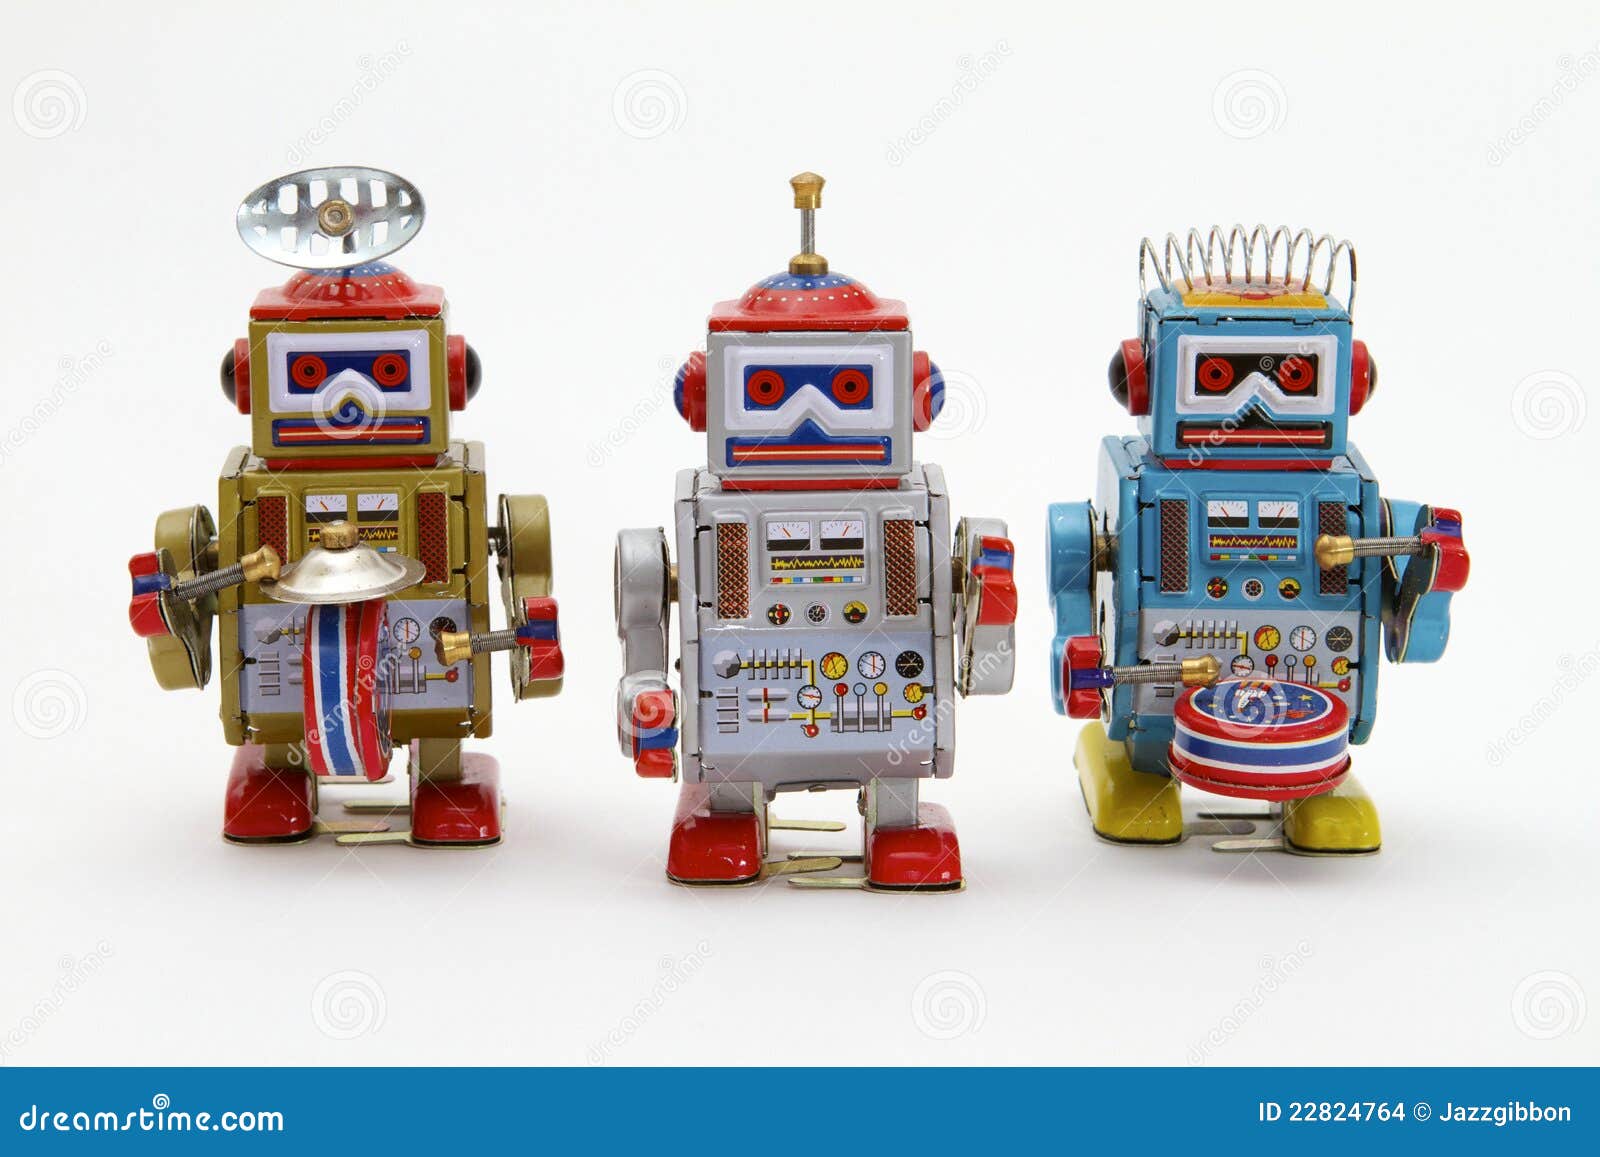 tin toy robots